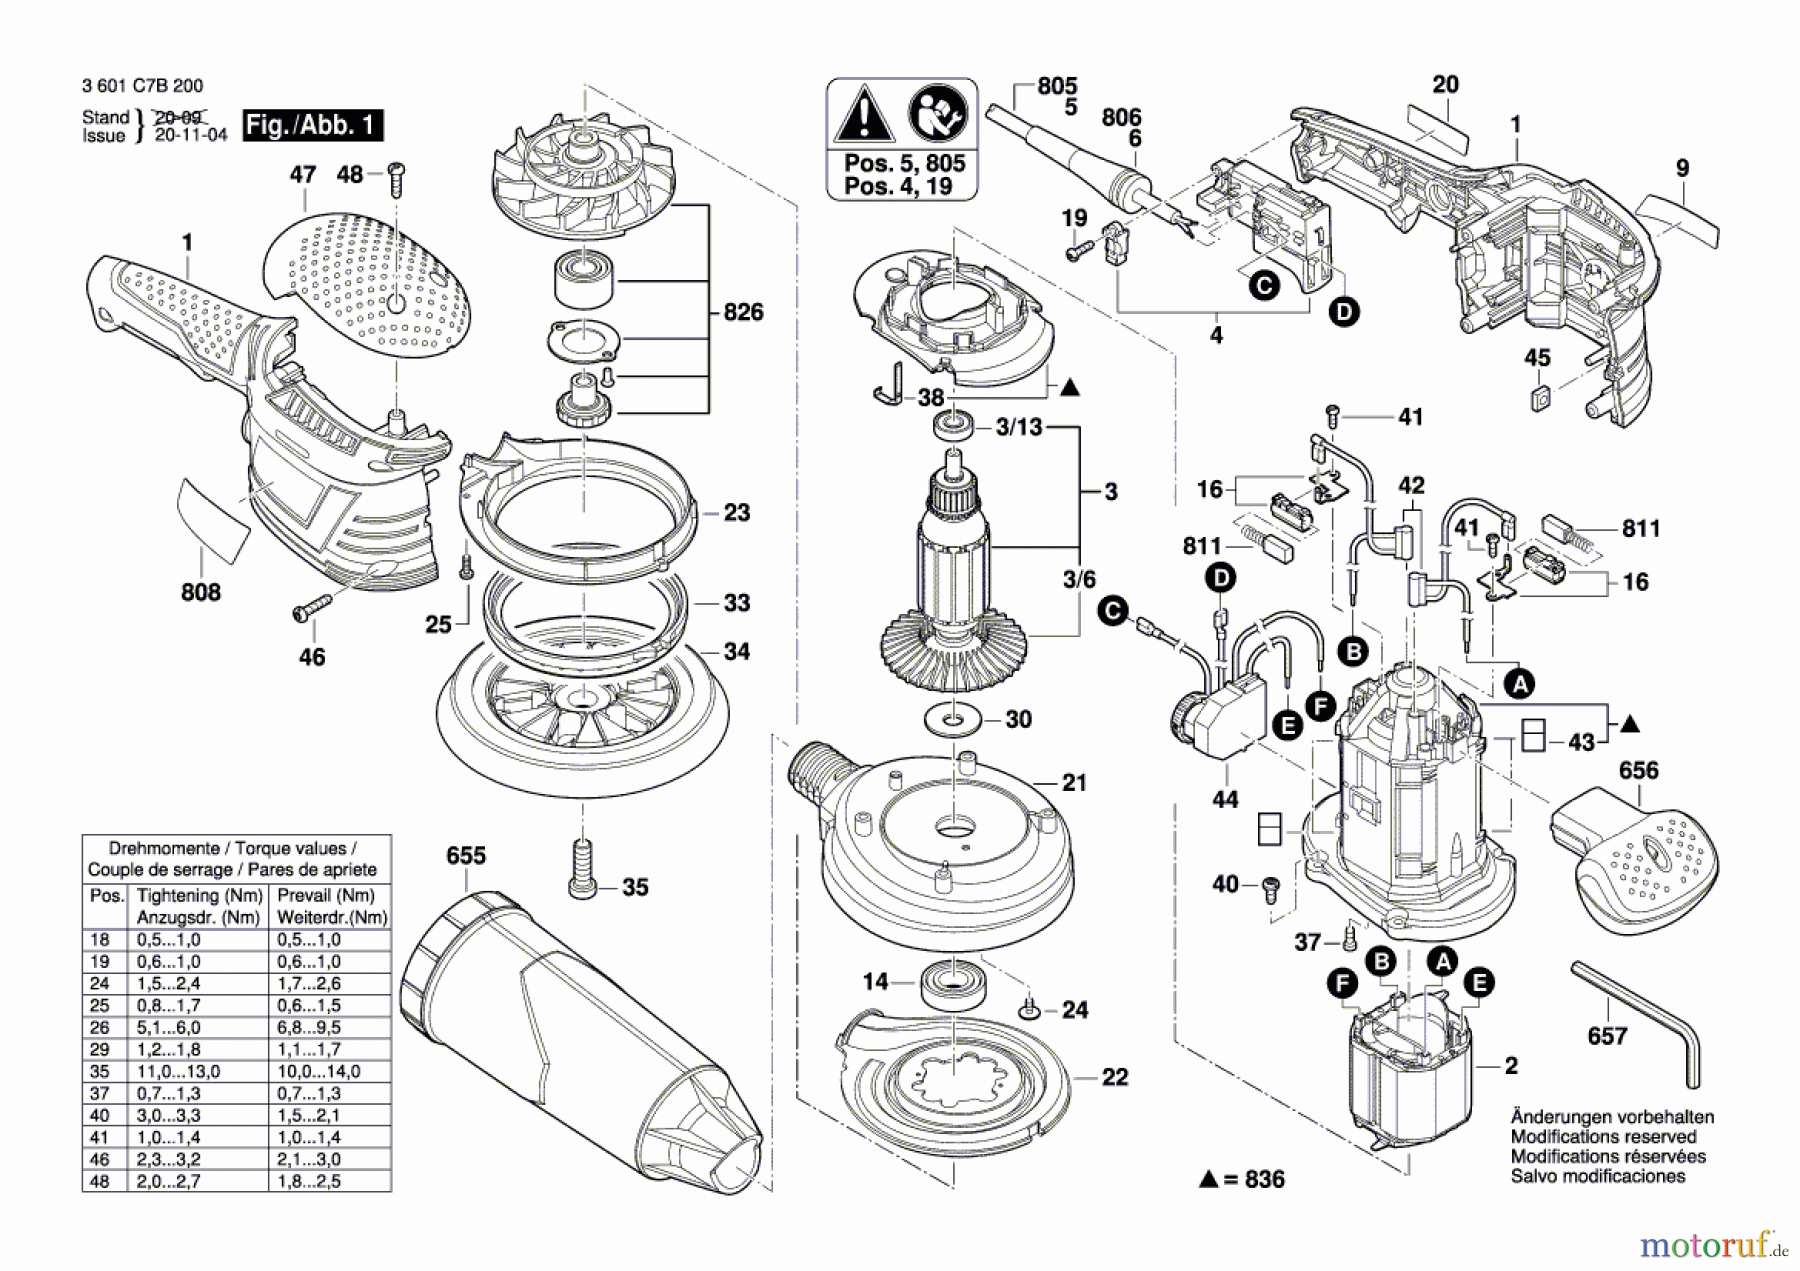  Bosch Werkzeug Exzenterschleifer GEX 40-150 Seite 1